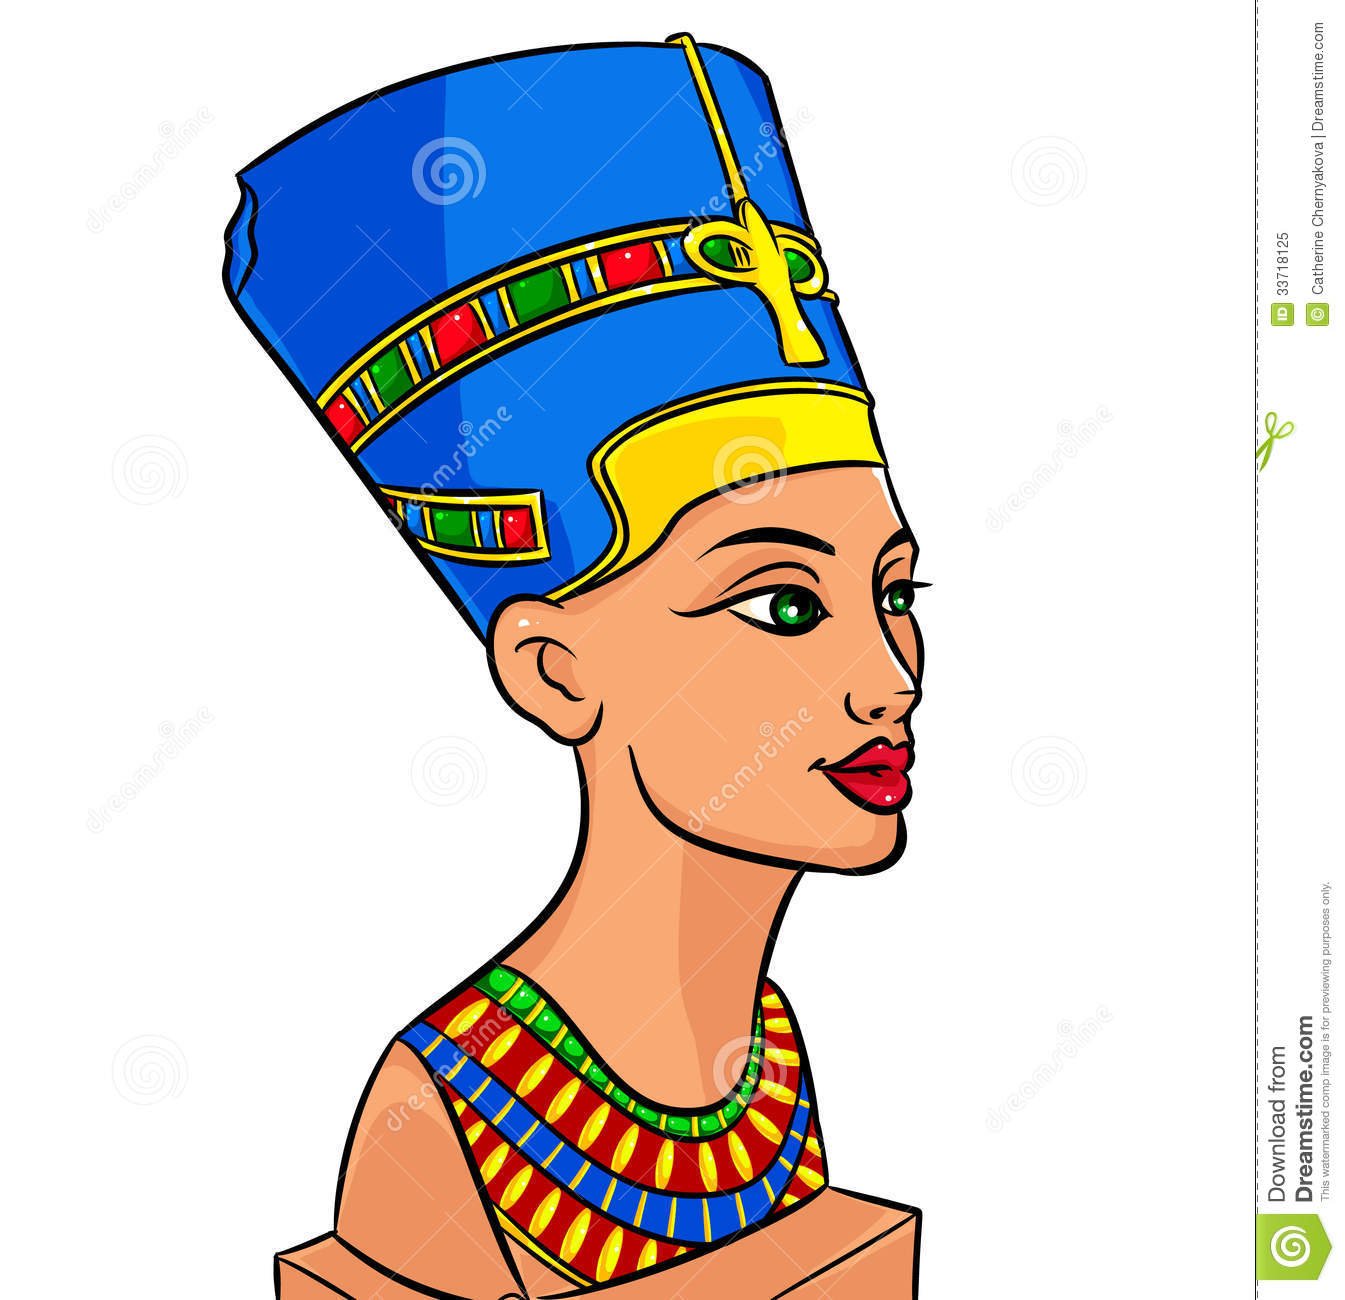 Нефертити царица Египта срисовать